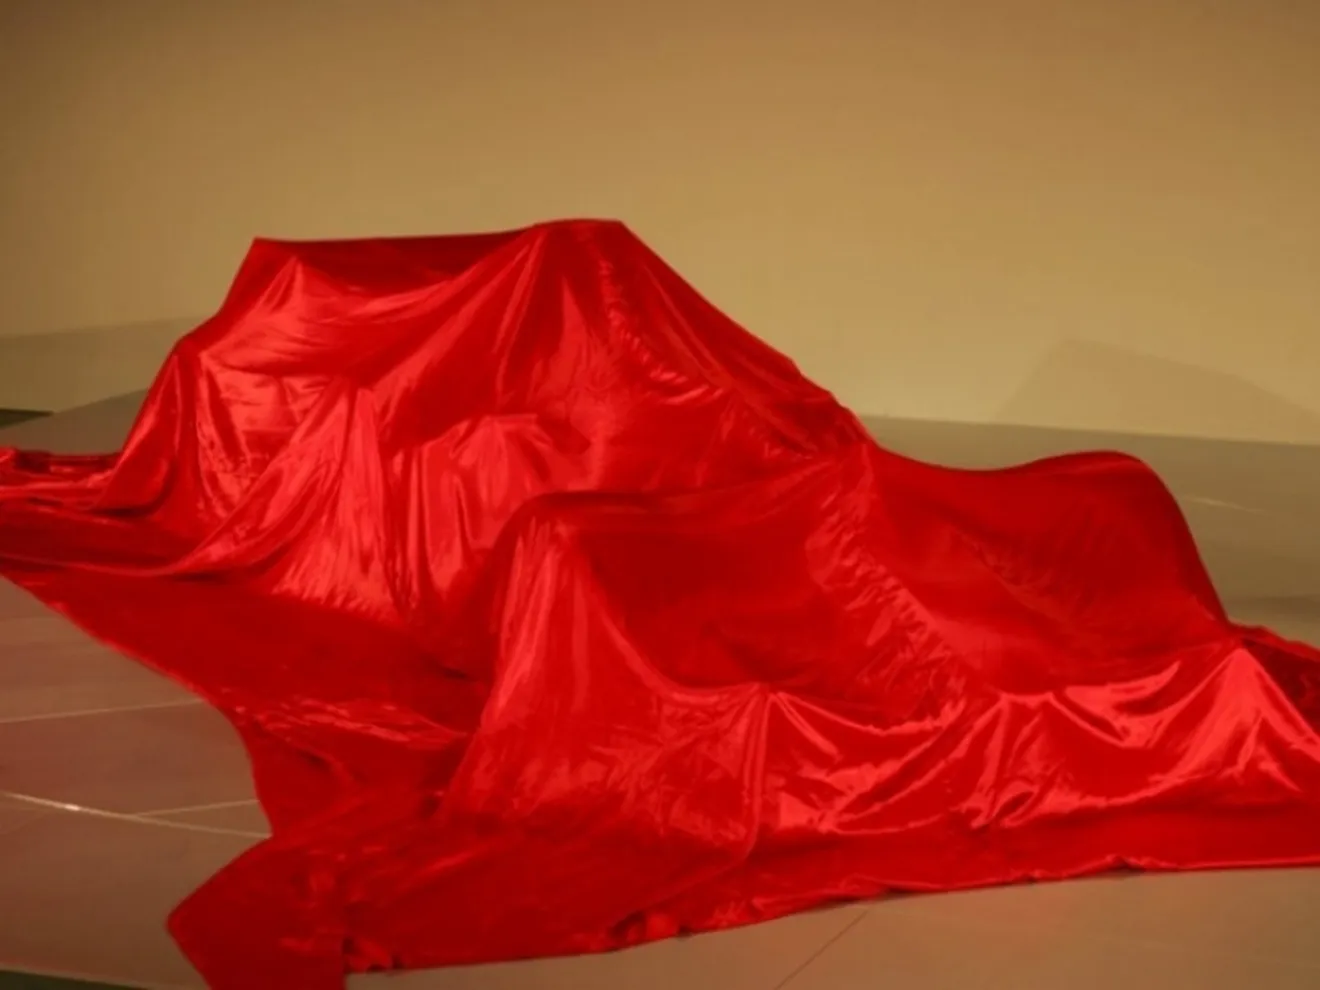 Ferrari presentará su nuevo coche el 1 de febrero